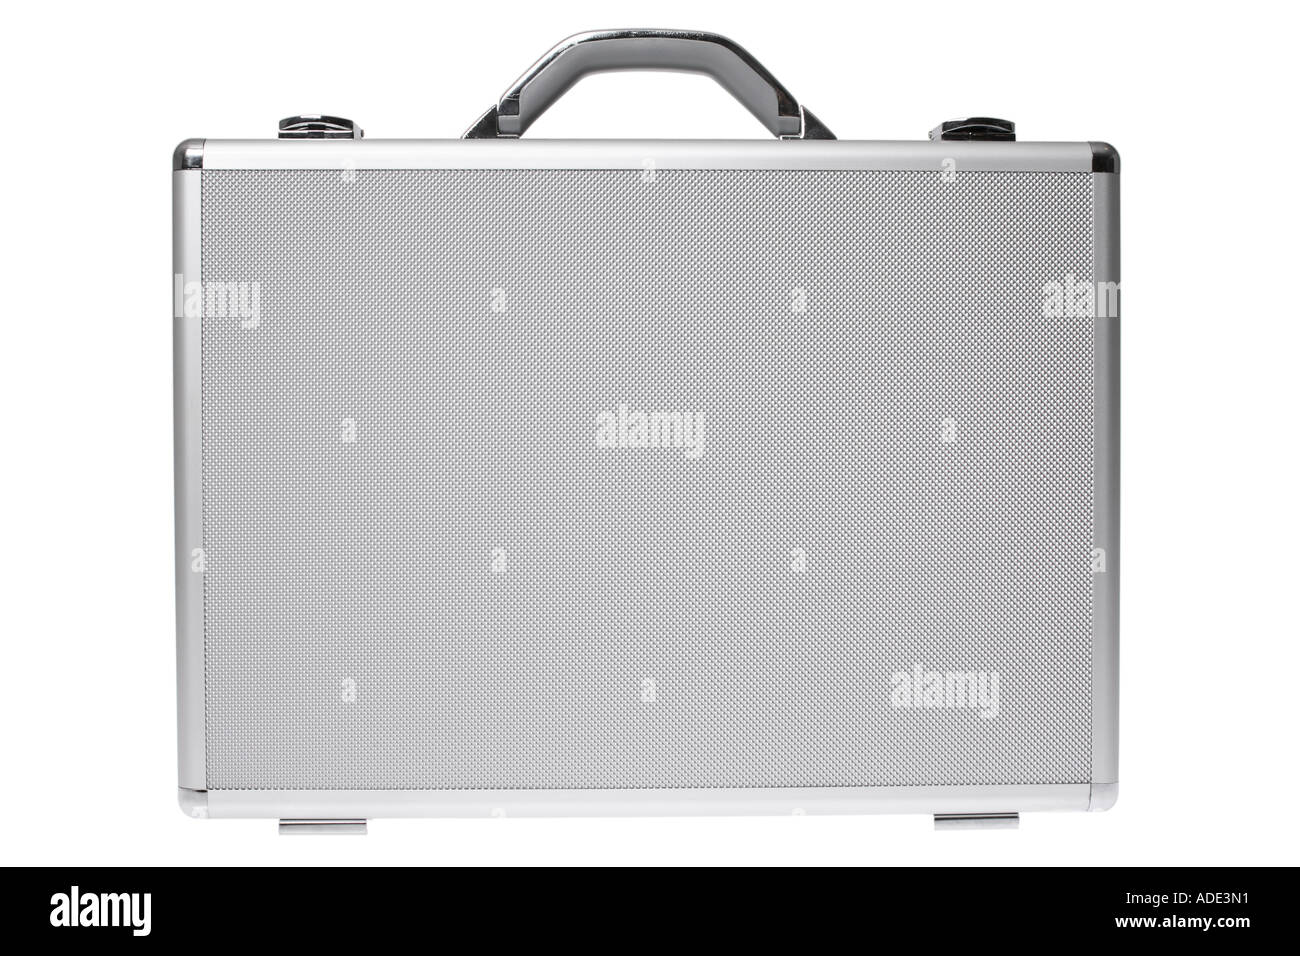 Aluminum Case Stock Photo